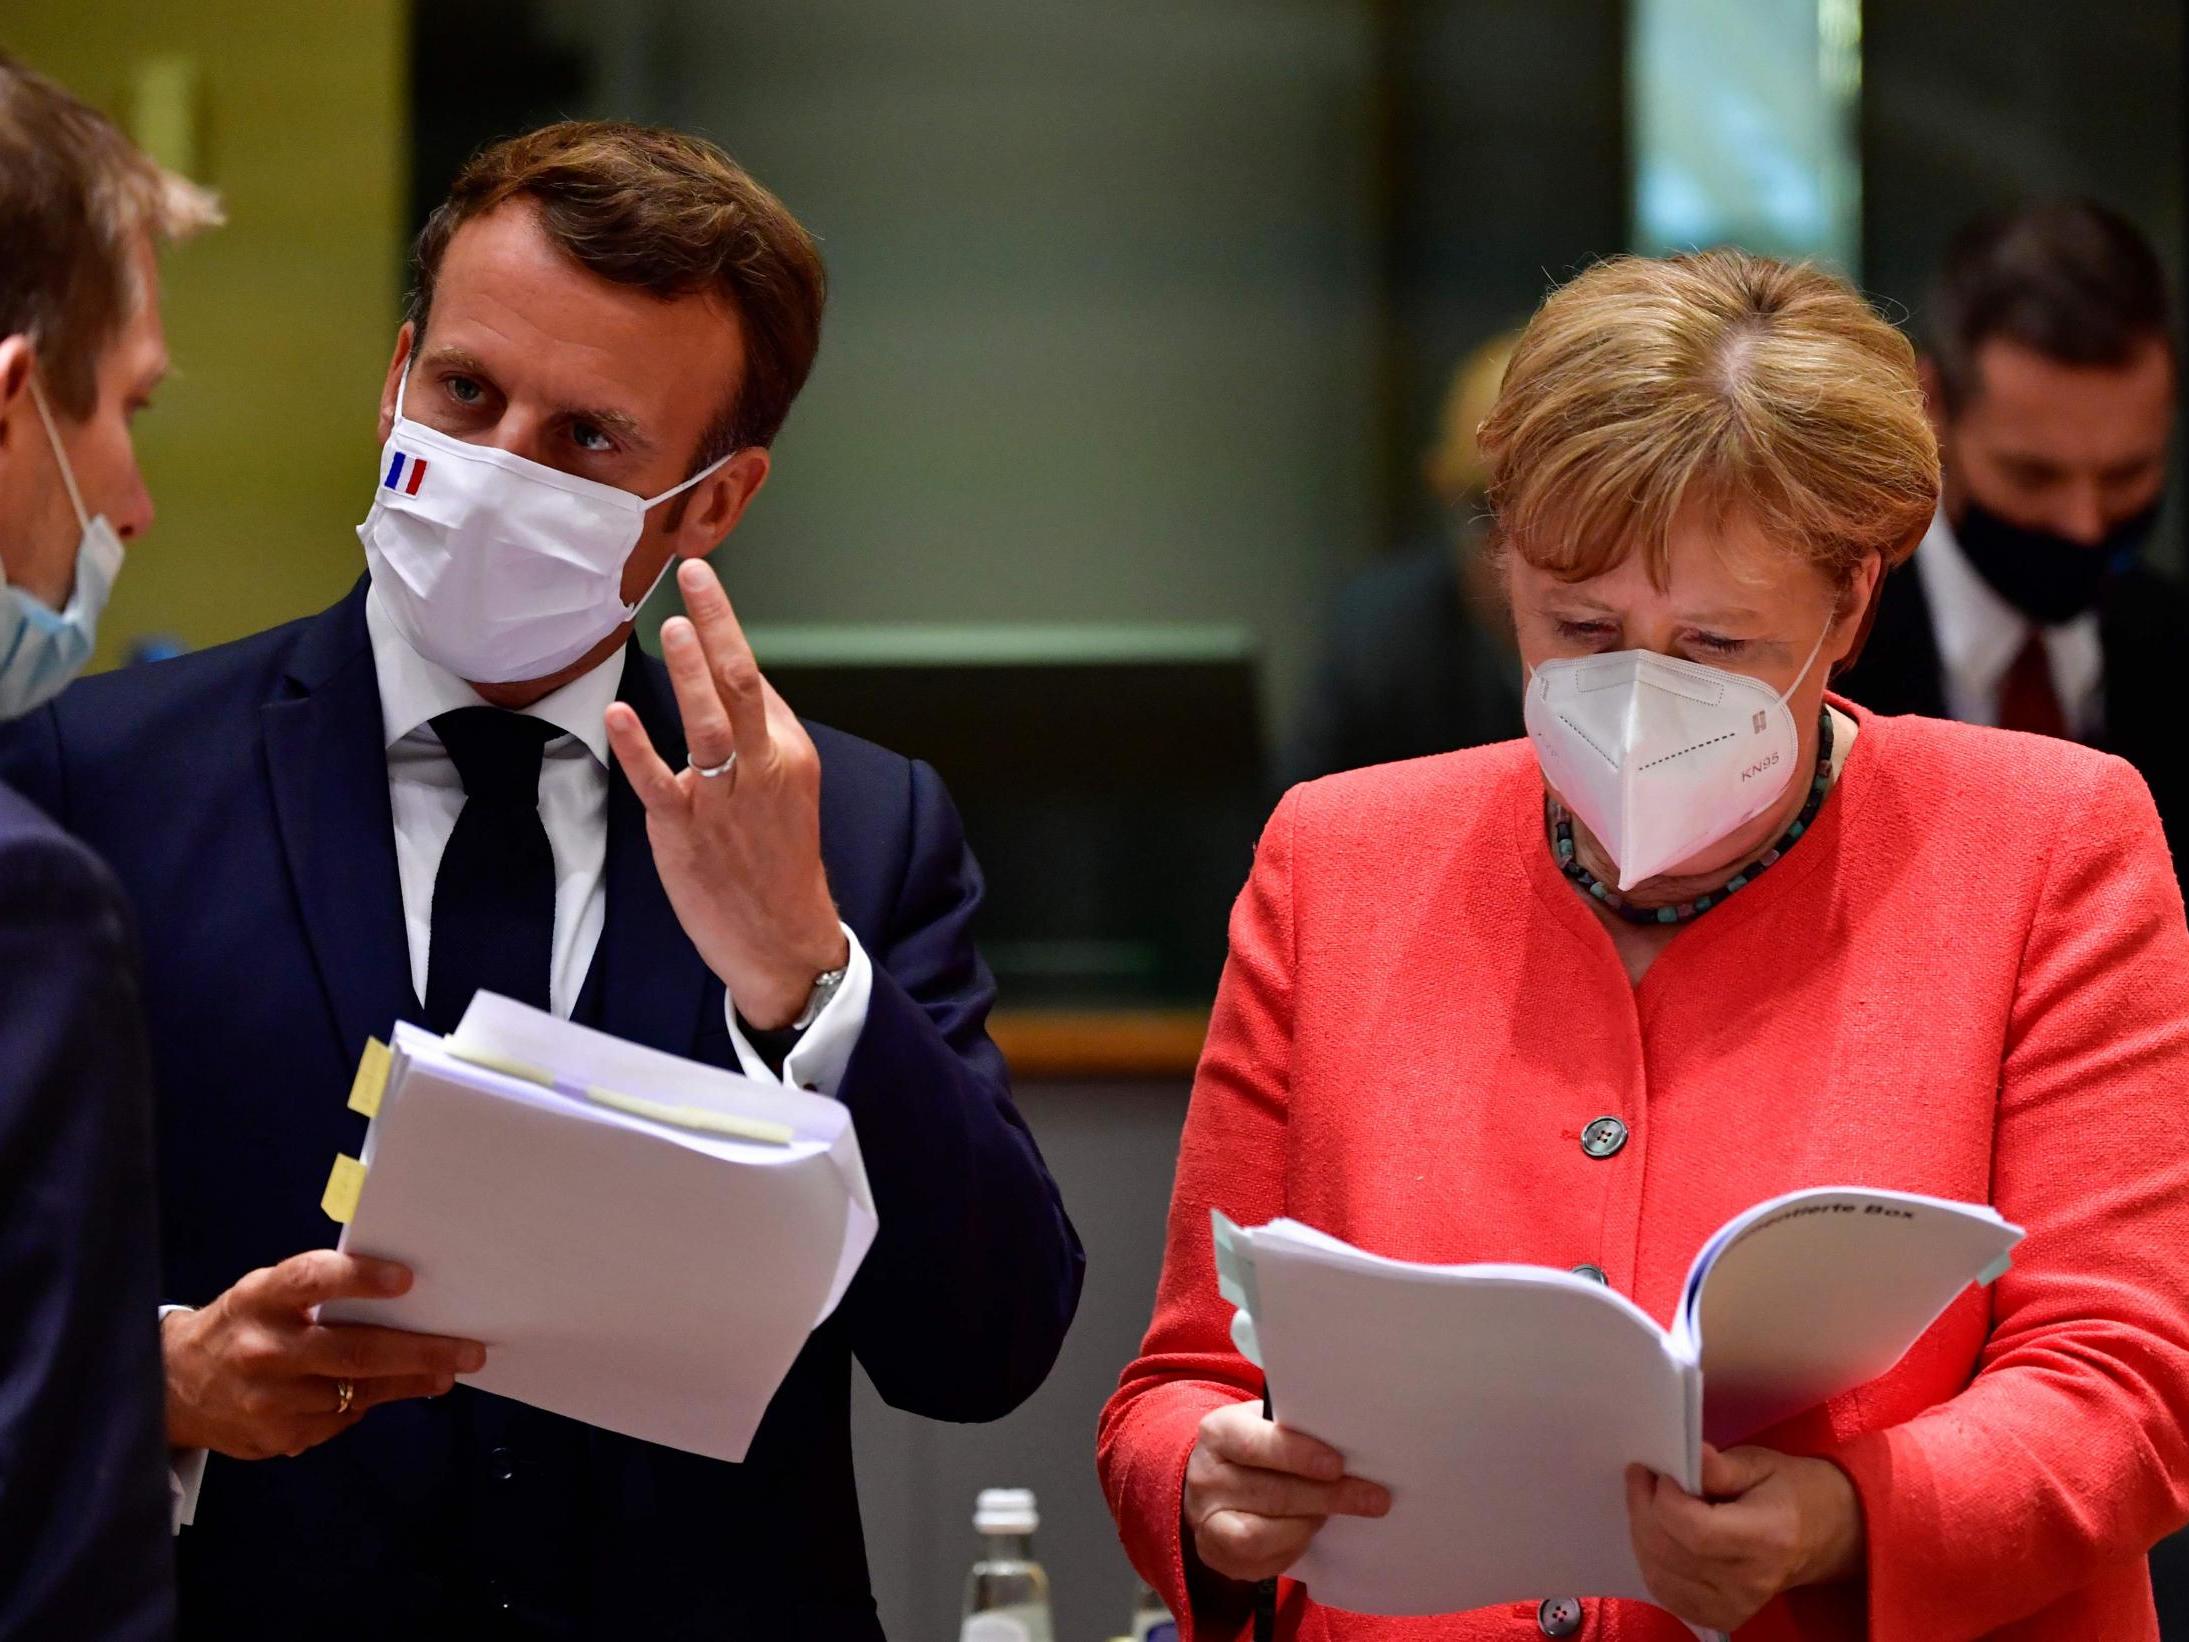 Emmanuel Macron and Angela Merkel kept hopes of a deal alive, a diplomat said